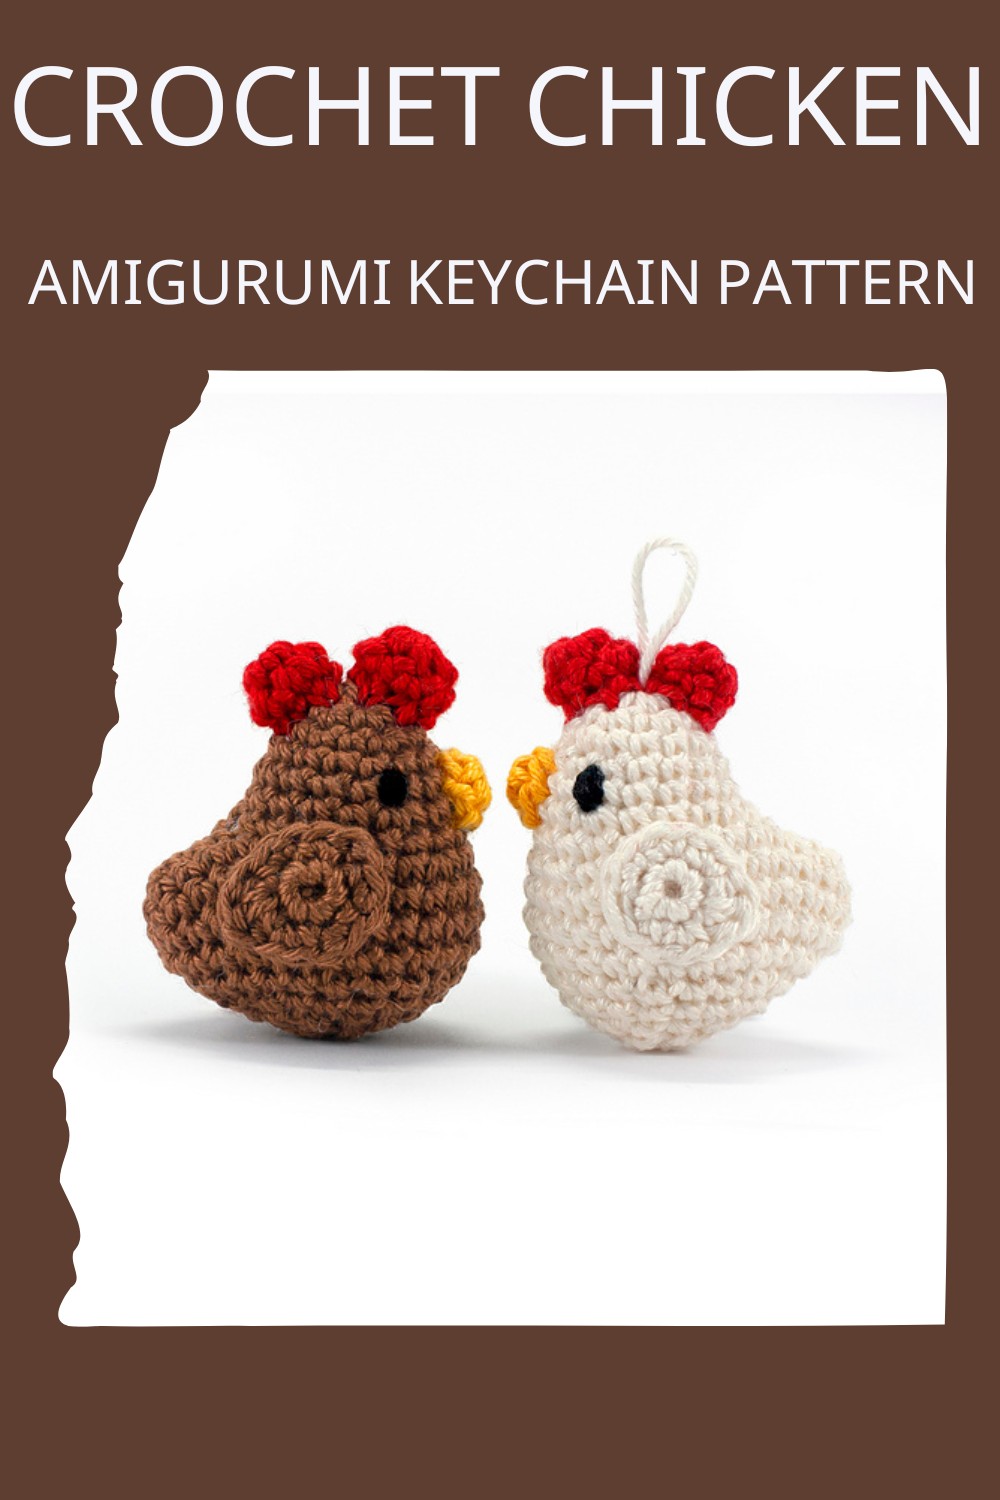 Crochet Chicken Amigurumi Keychain Pattern